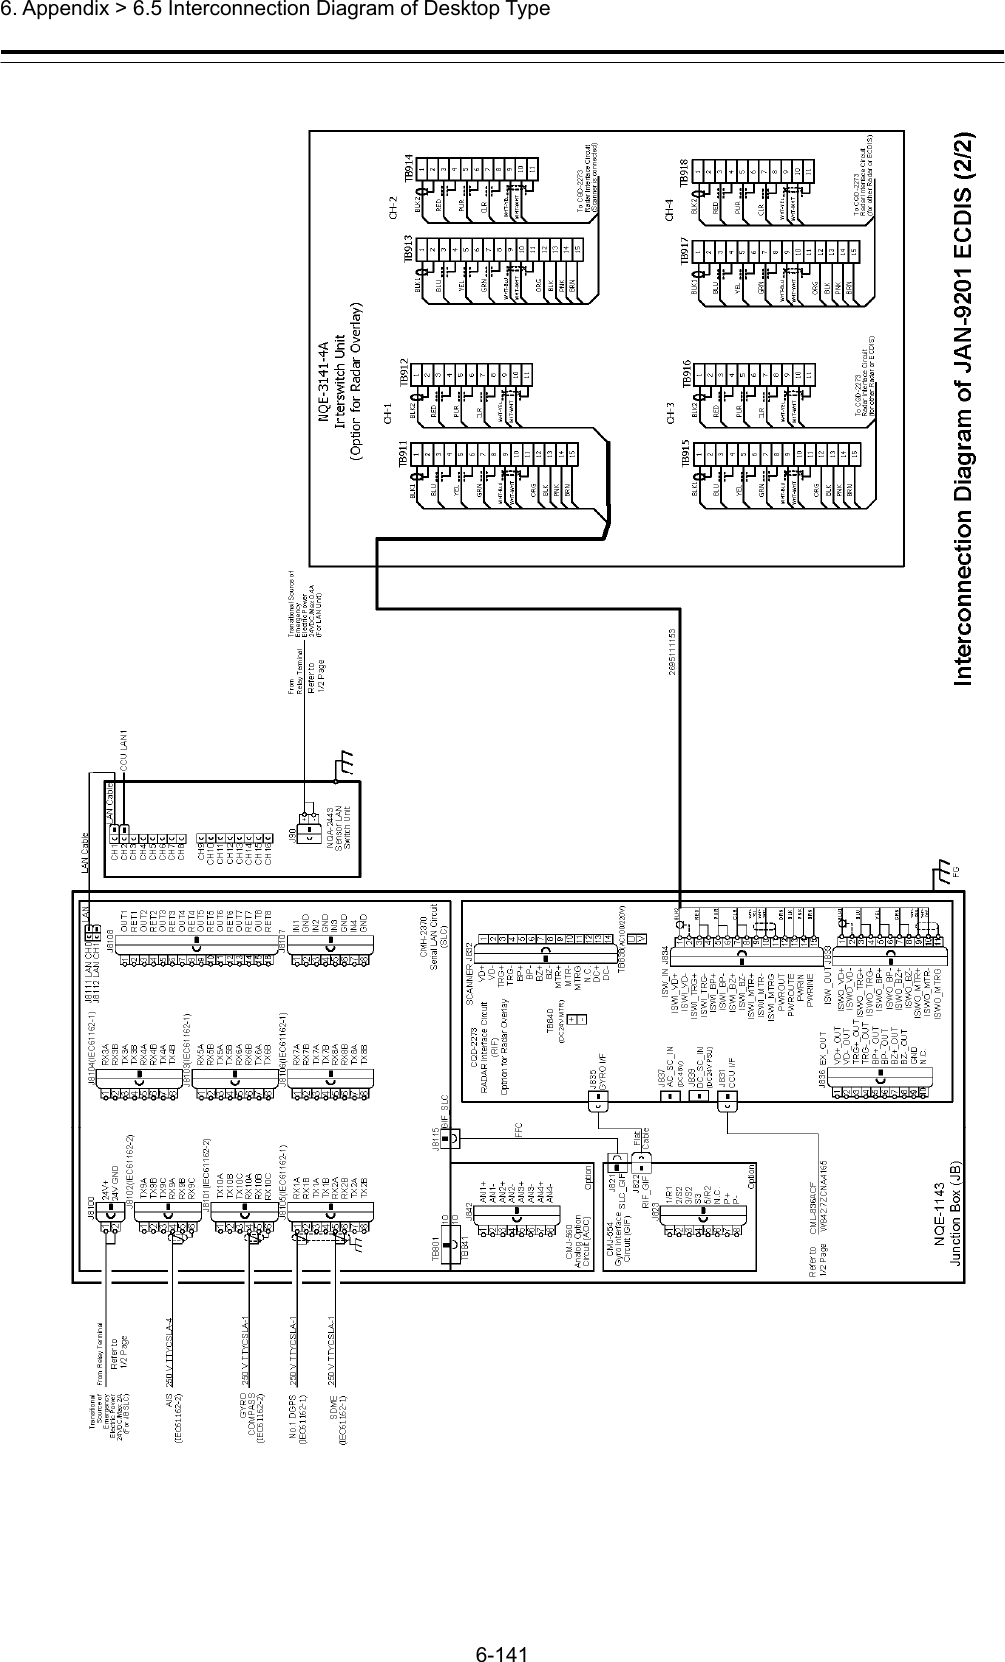  6. Appendix &gt; 6.5 Interconnection Diagram of Desktop Type 6-141  